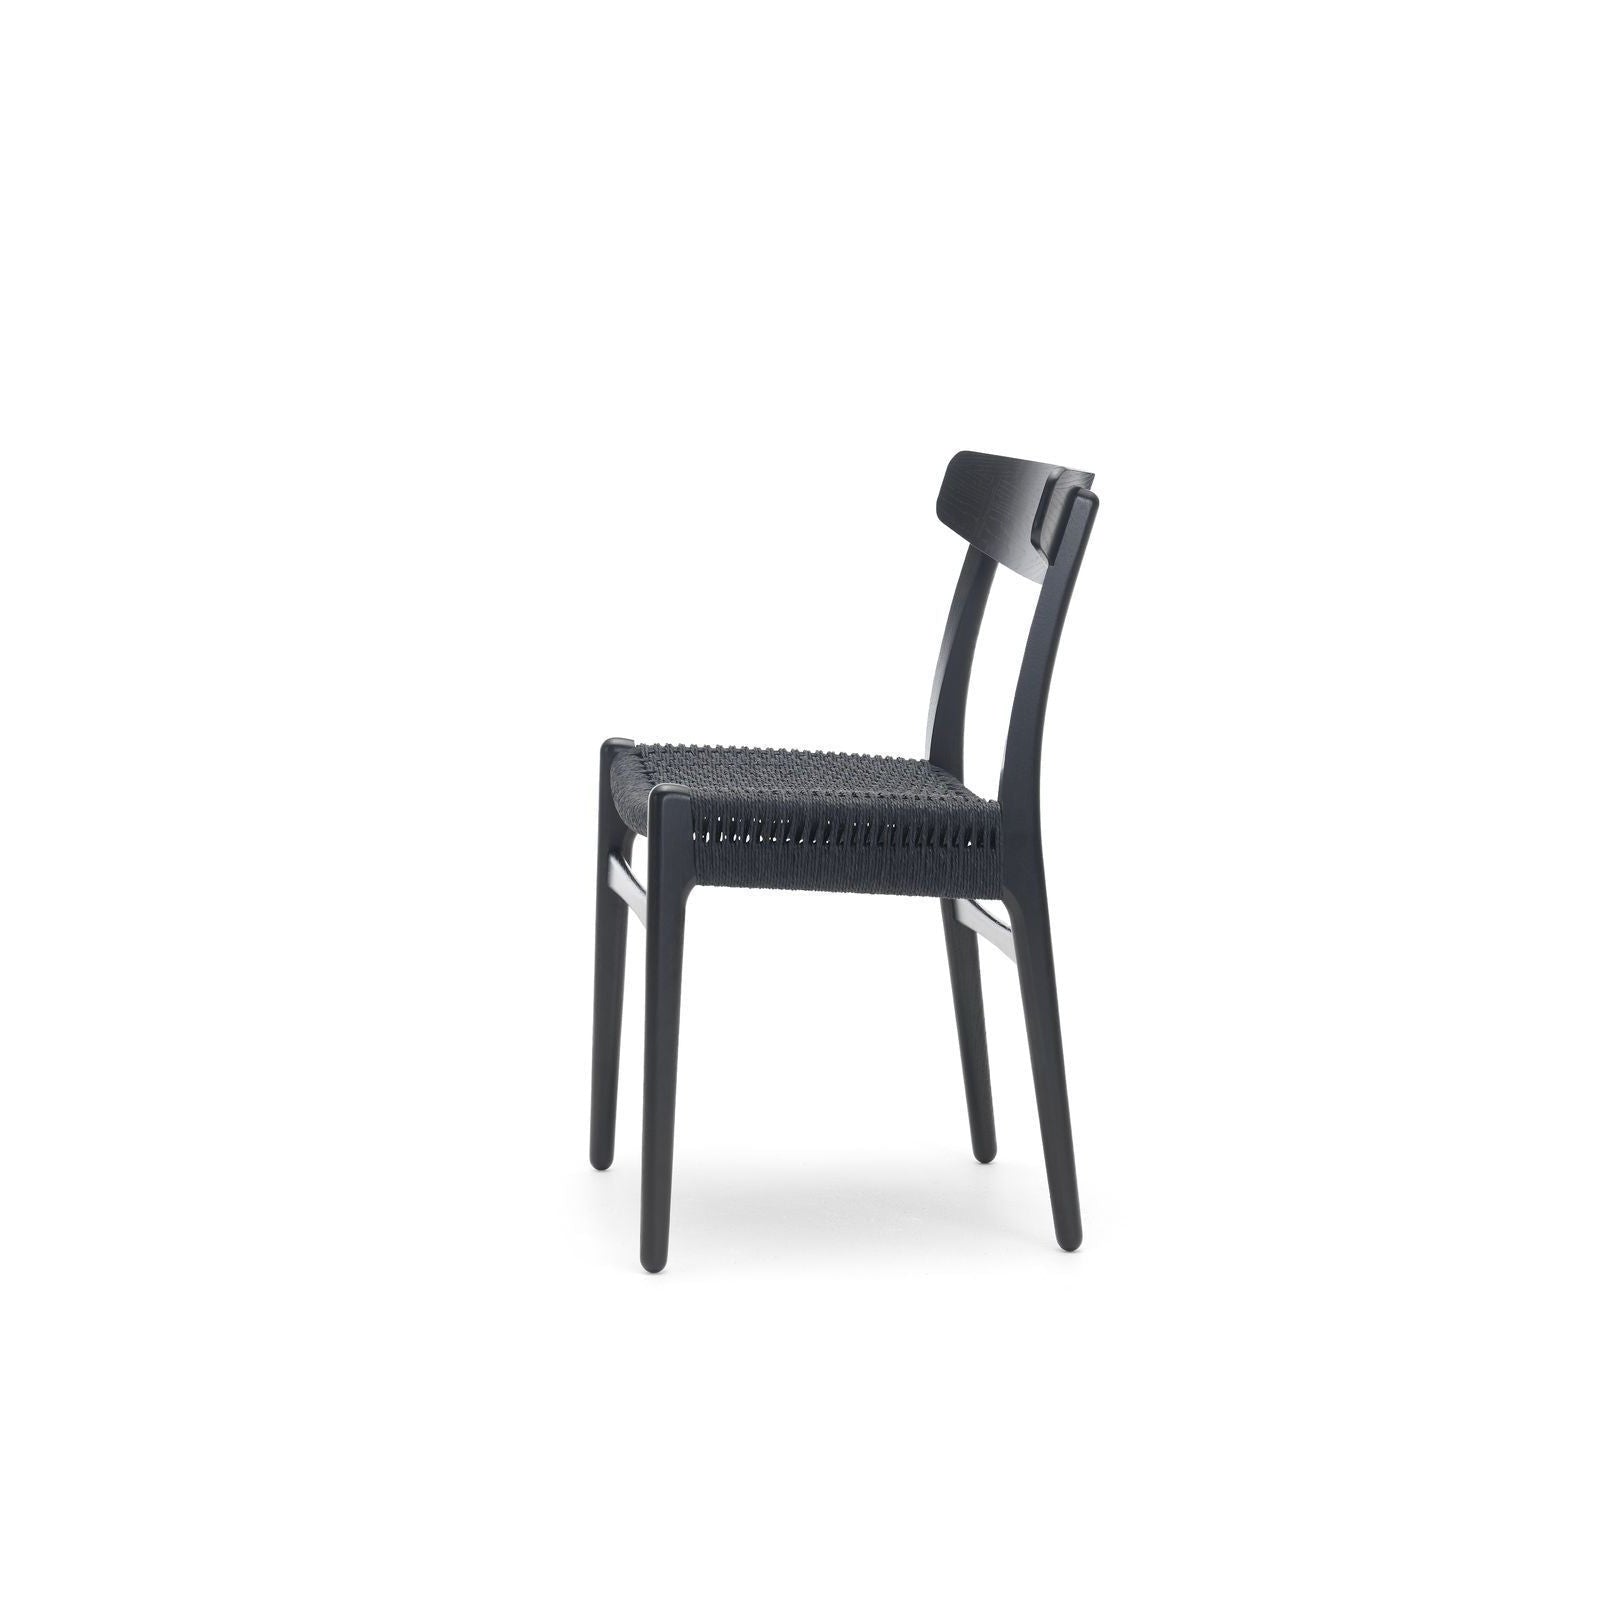 Carl Hansen CH23 -stoel, zwart eiken/zwart papiersnoer